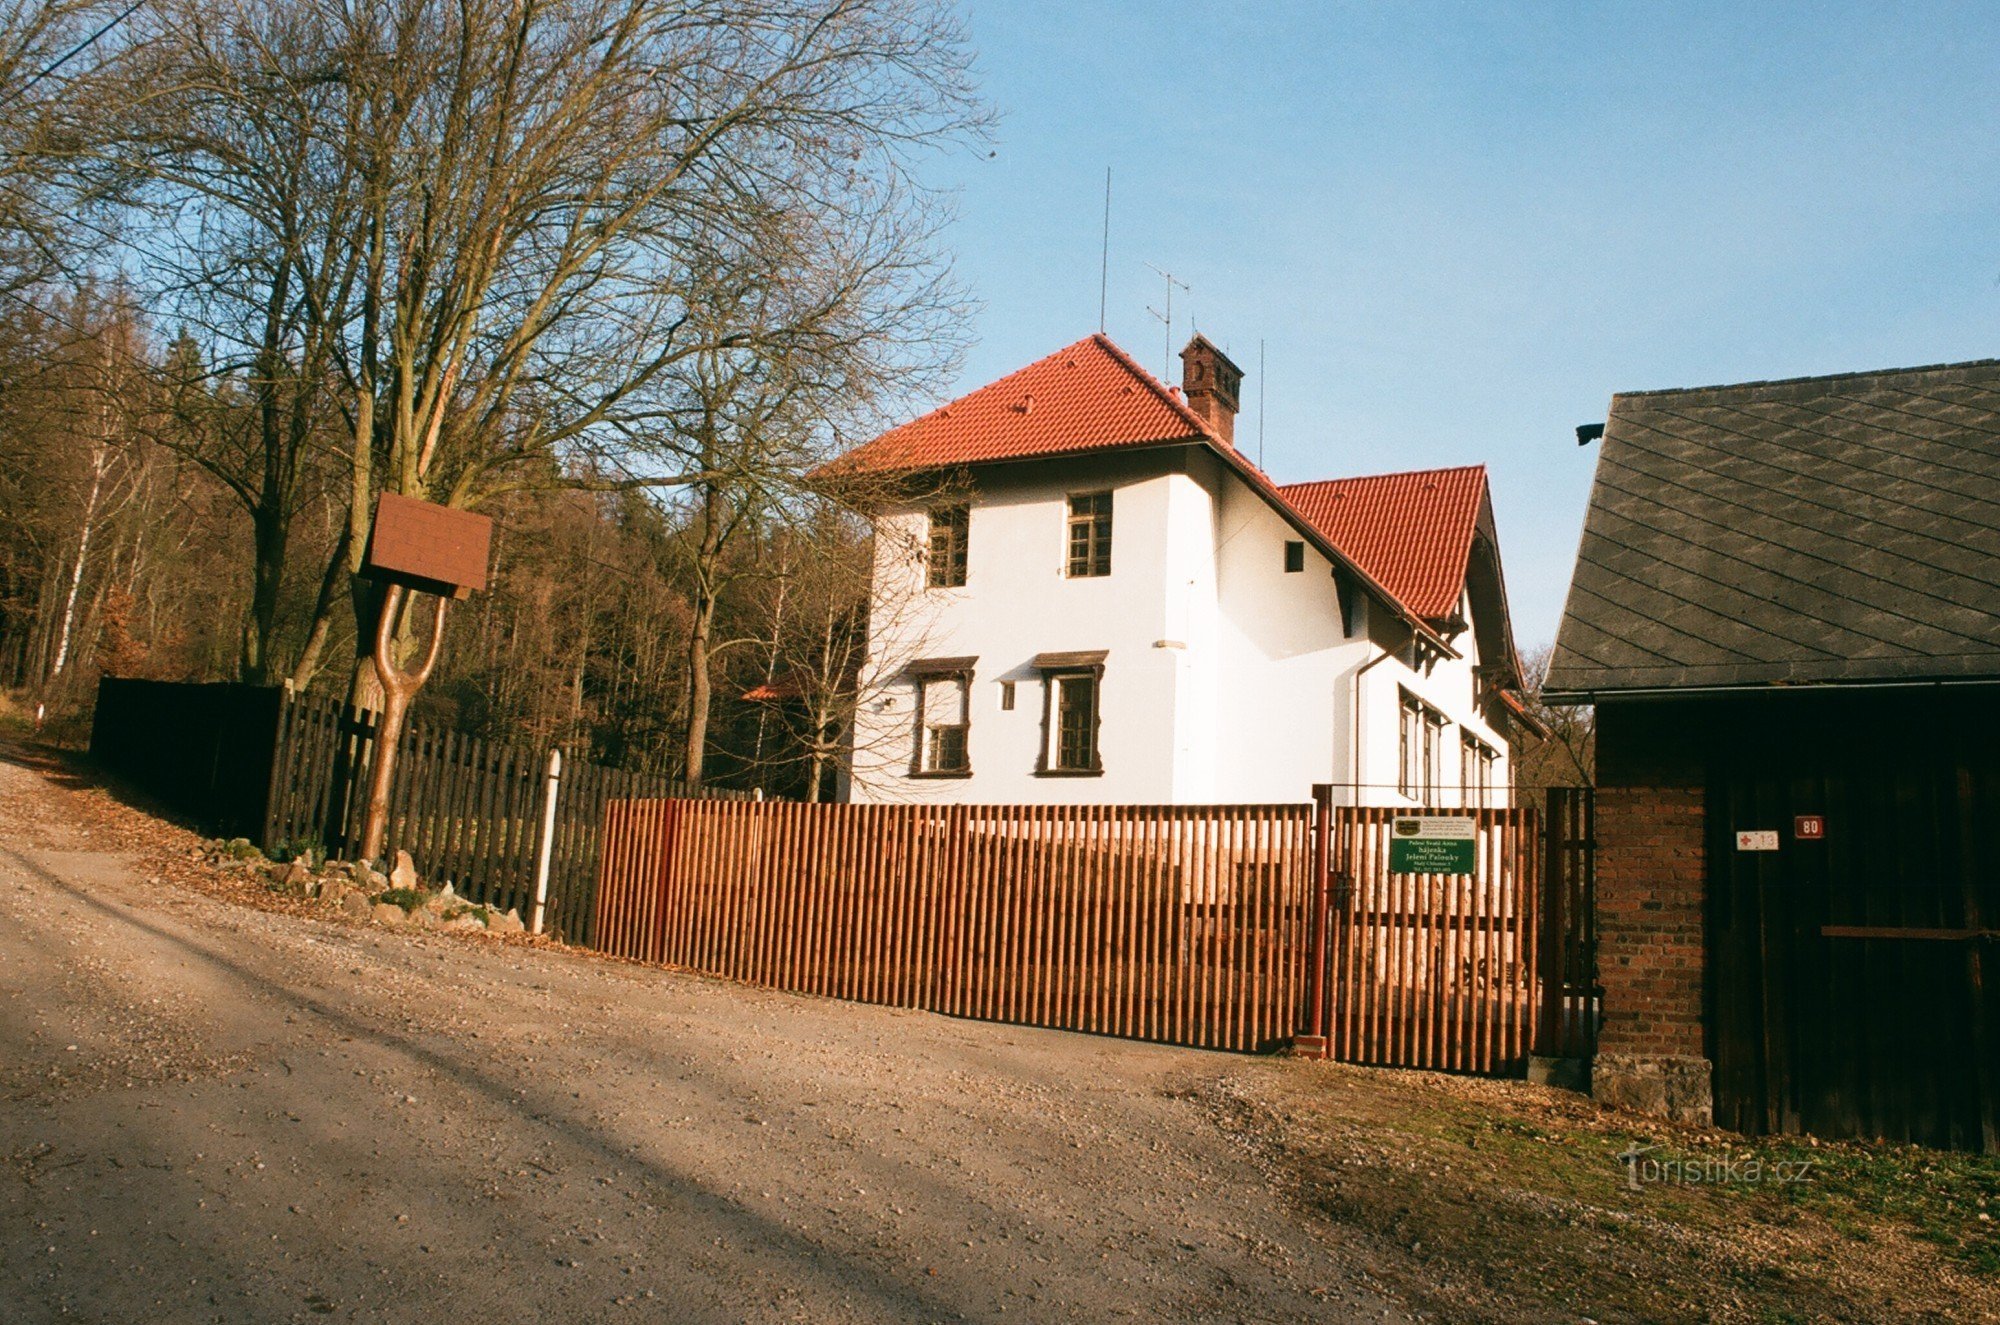 Reserva de caza Jelení palouky cerca de Hradec